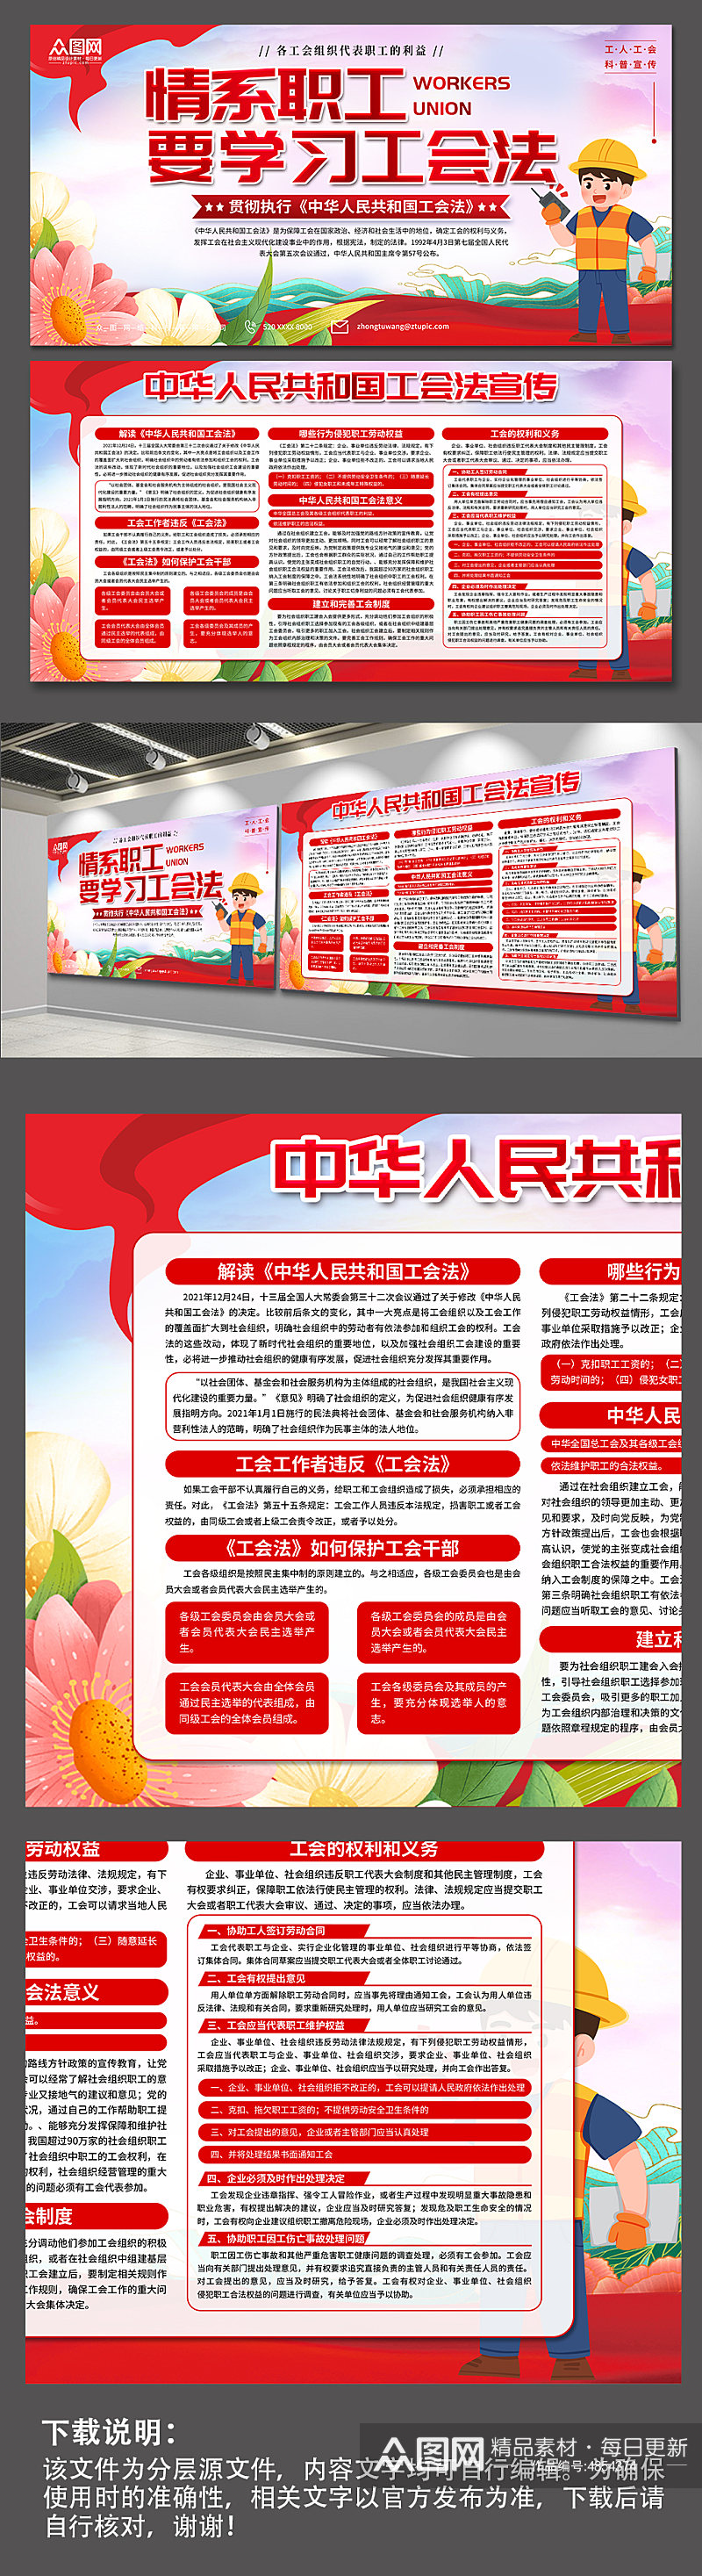 红色中华人民共和国工会法宣传展板素材